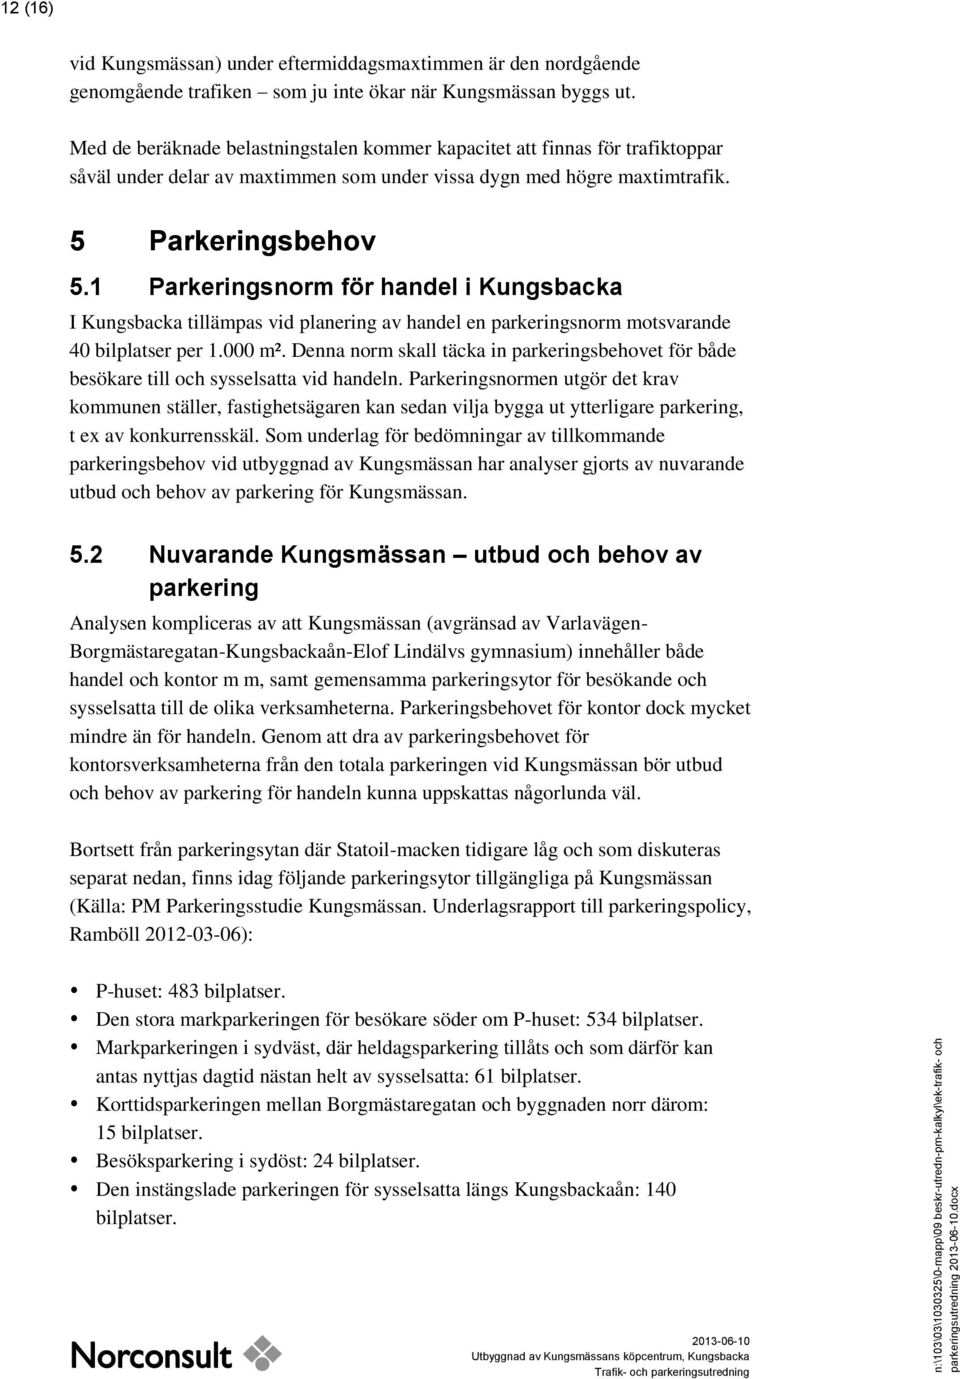 1 Parkeringsnorm för handel i Kungsbacka I Kungsbacka tillämpas vid planering av handel en parkeringsnorm motsvarande 40 bilplatser per 1.000 m².